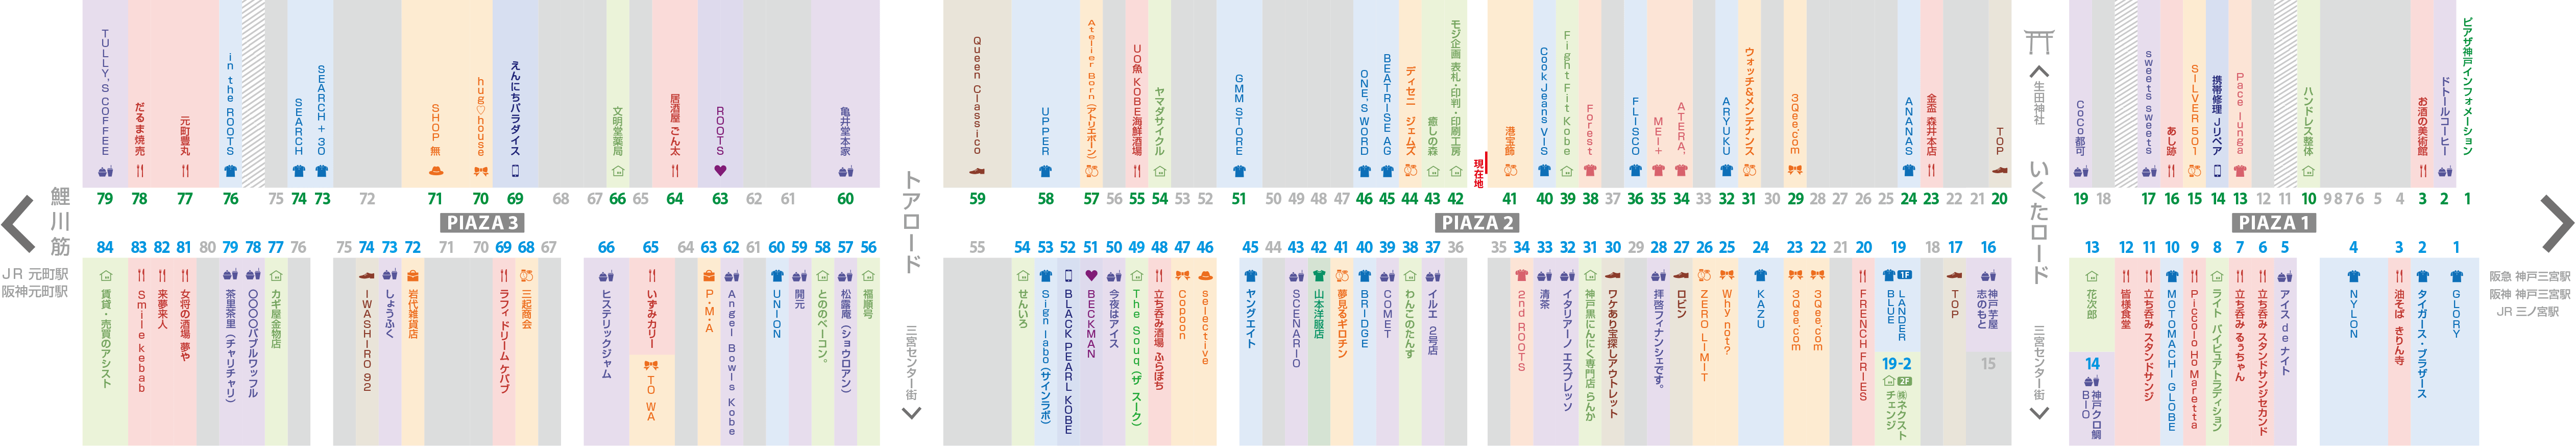 ピアザ神戸店舗マップ